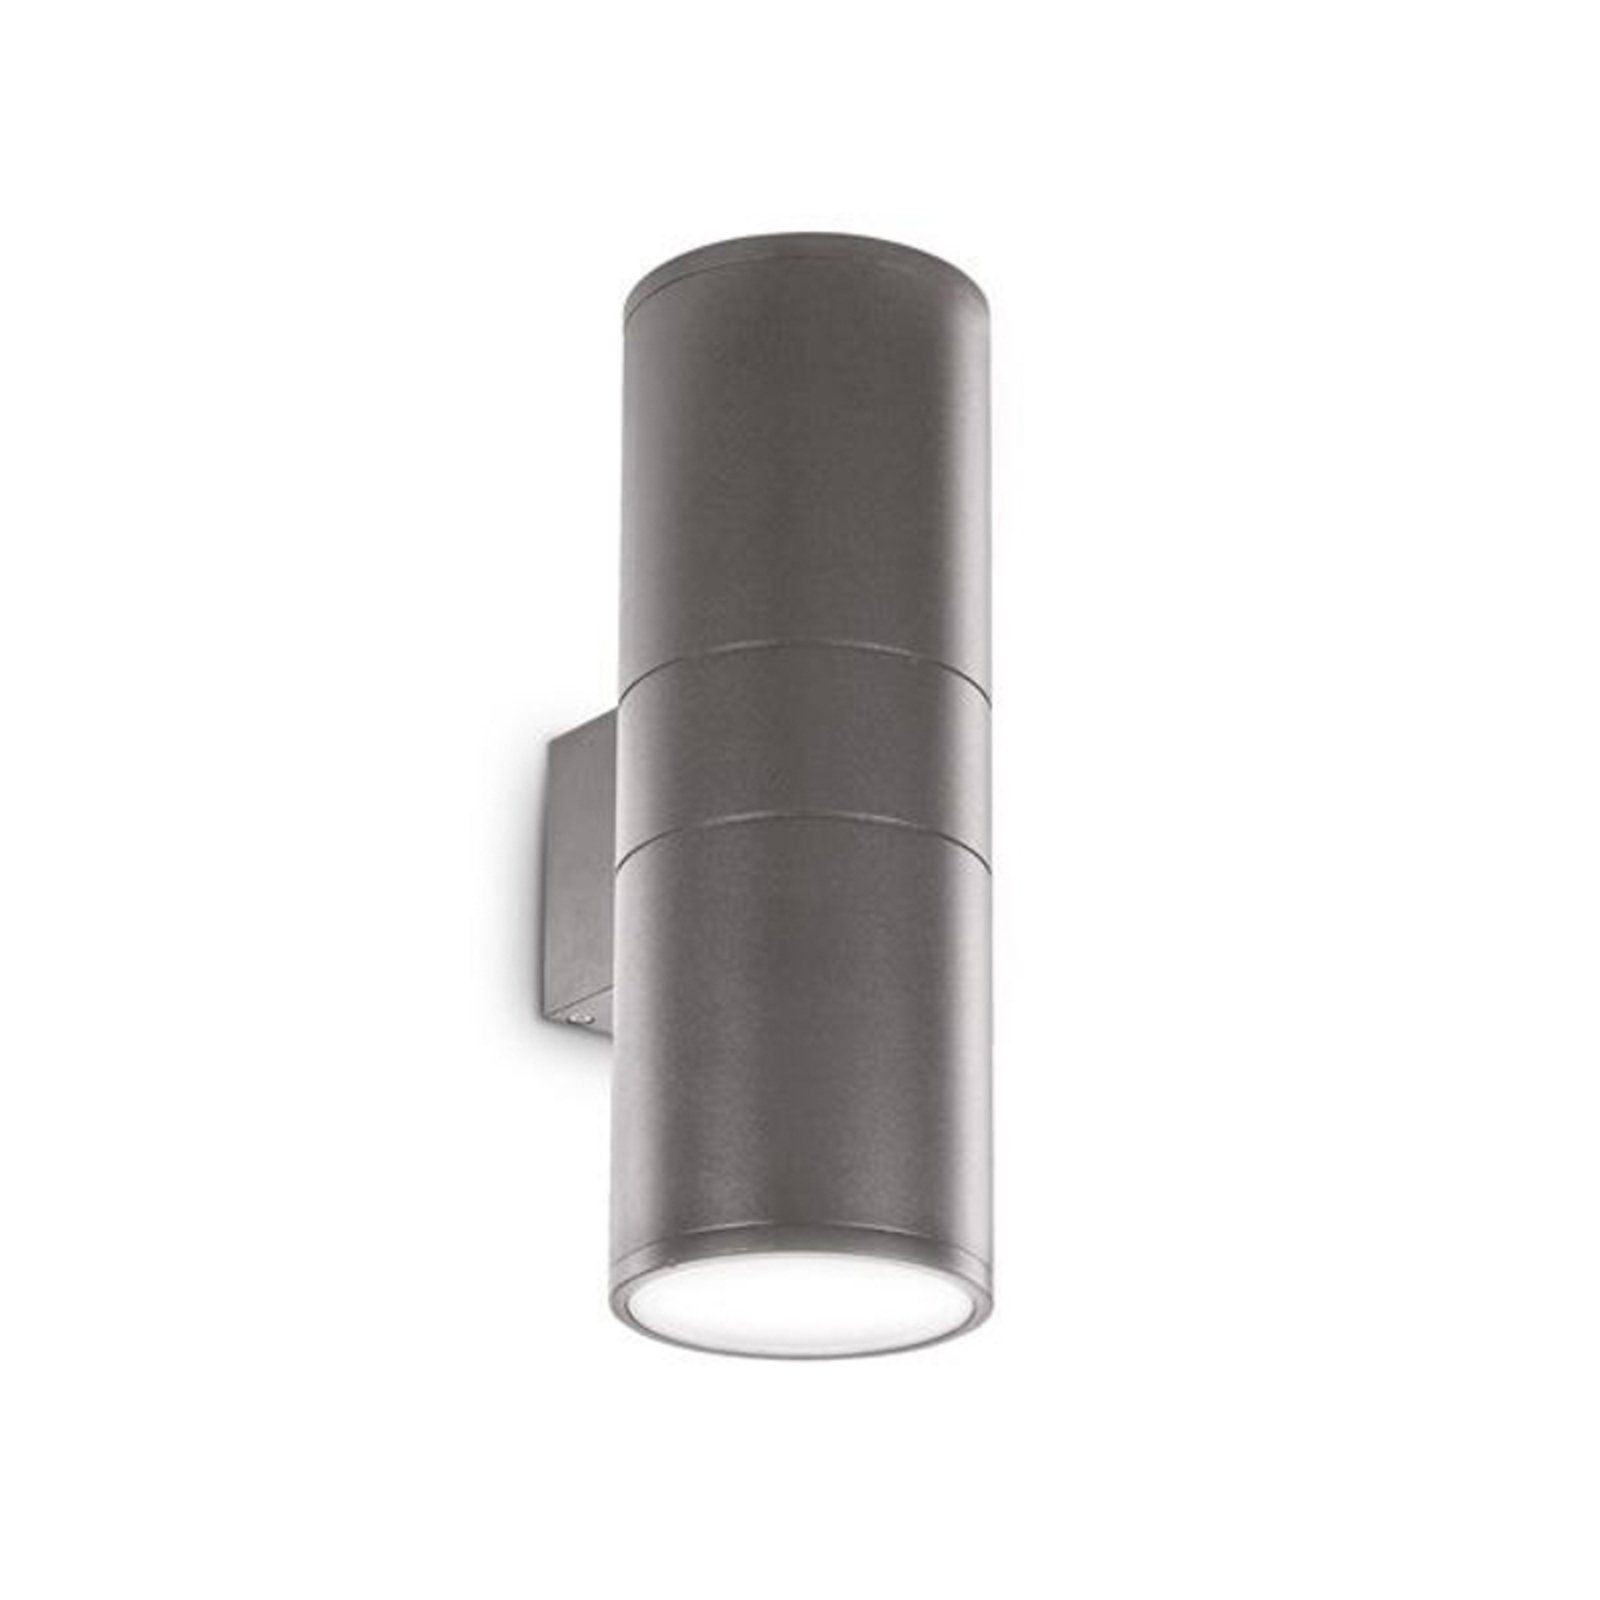 Ideal Lux kültéri fali lámpa Gun antracit alumínium, Ø 11 cm, fel/le,